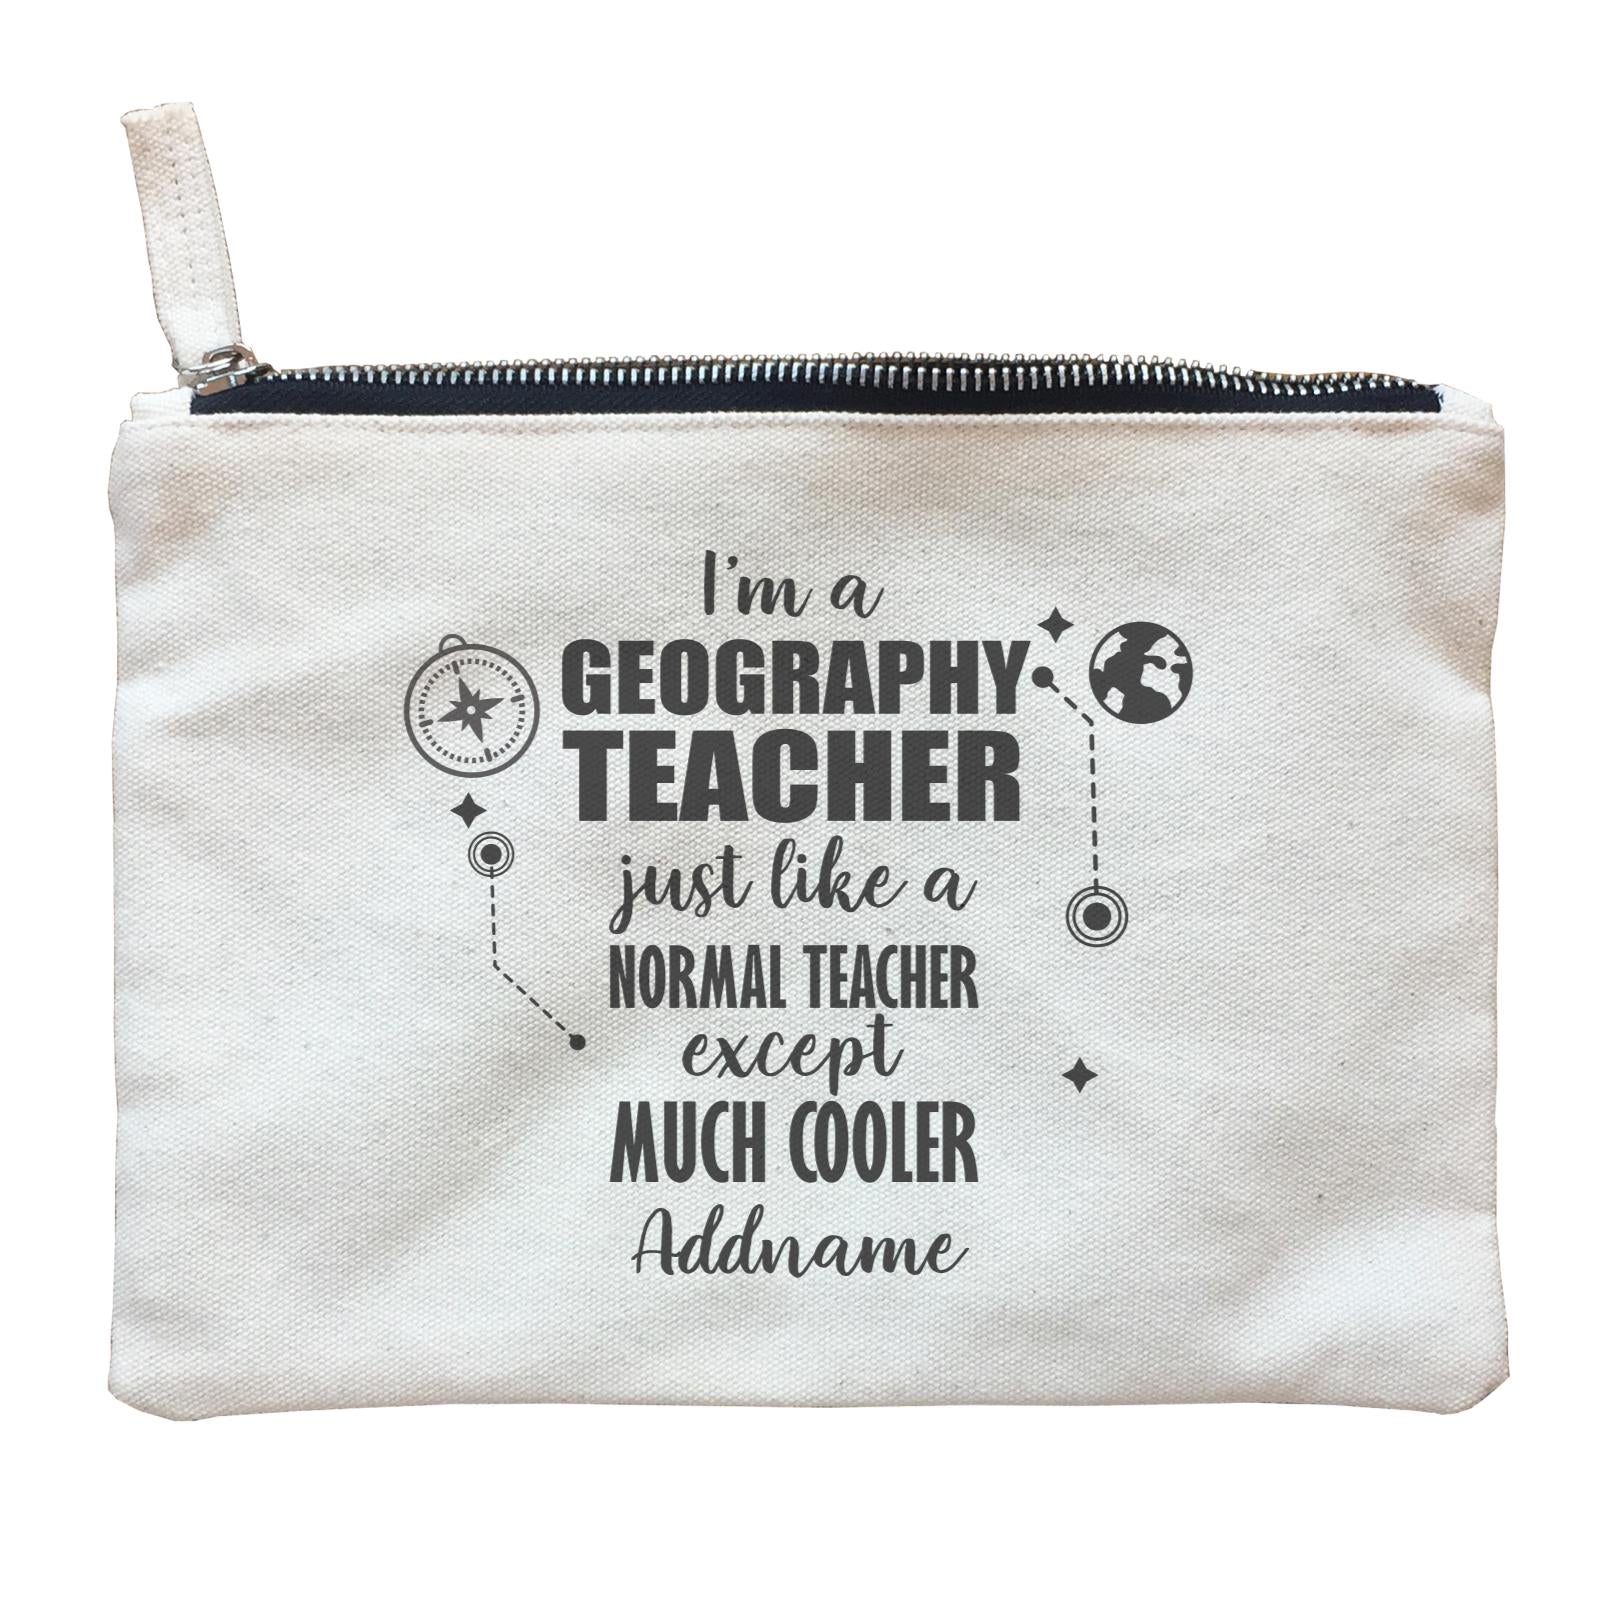 Subject Teachers 2 I'm A Geography Teacher Addname Zipper Pouch